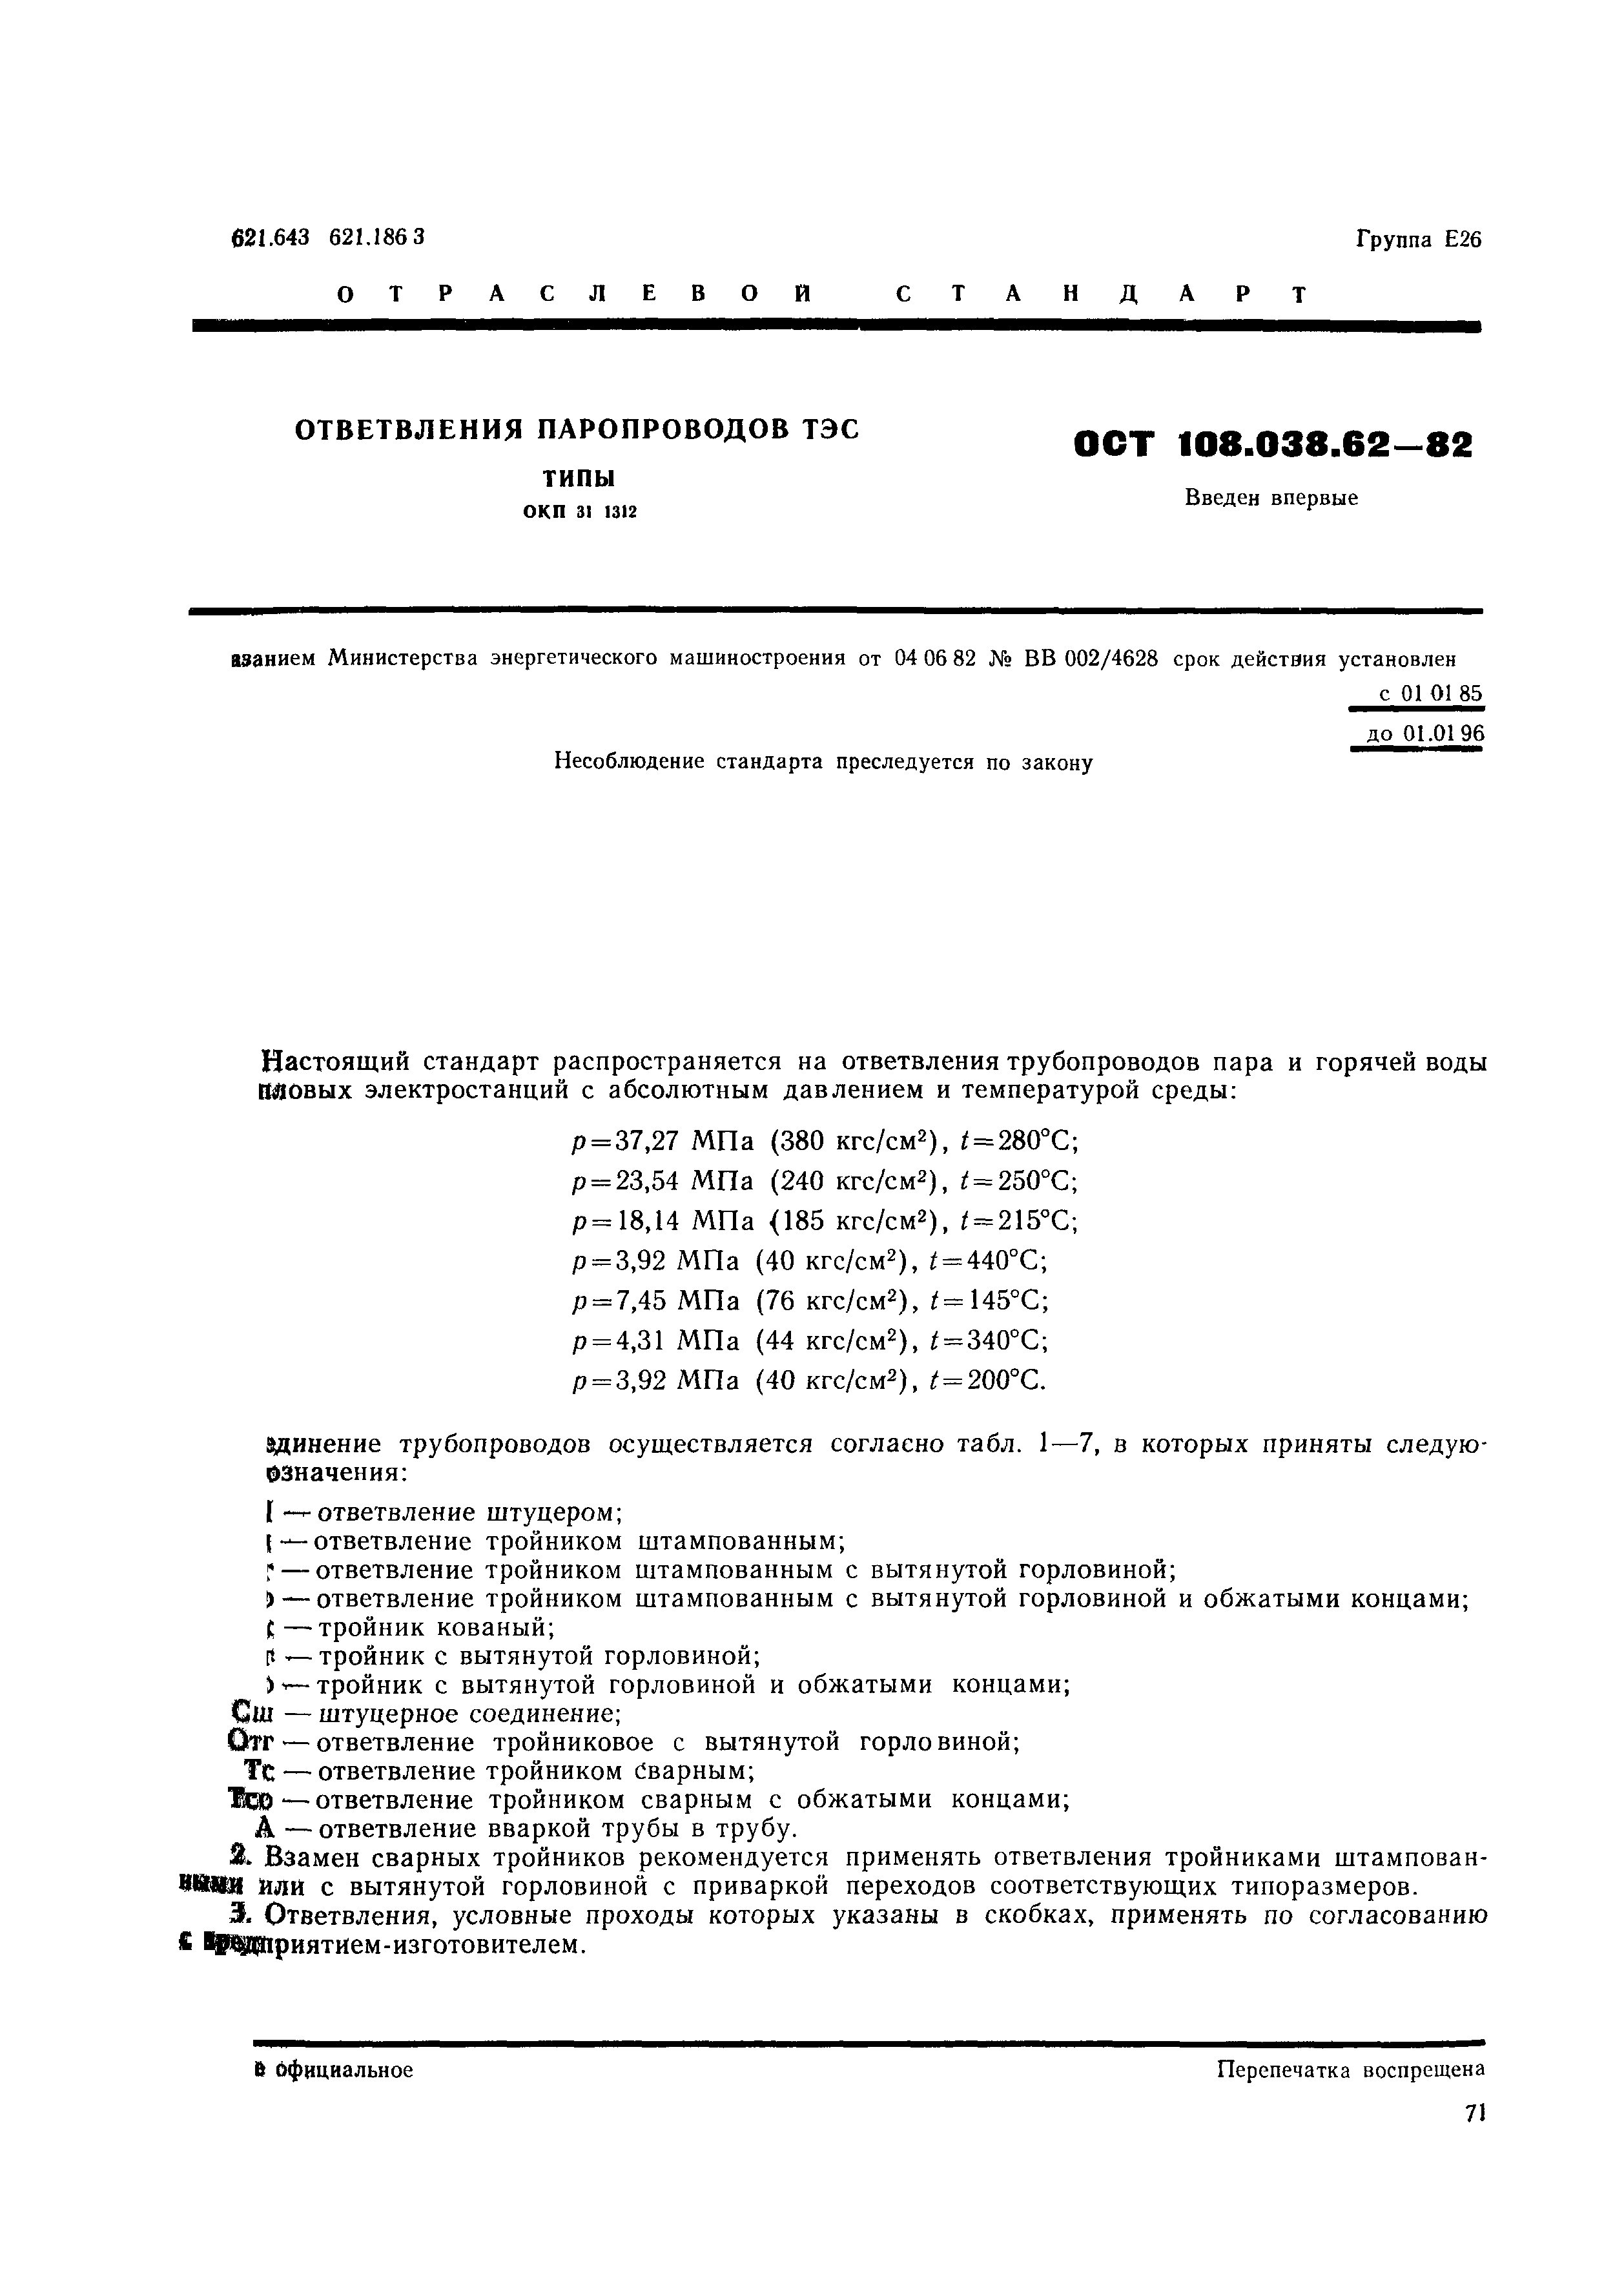 ОСТ 108.038.62-82